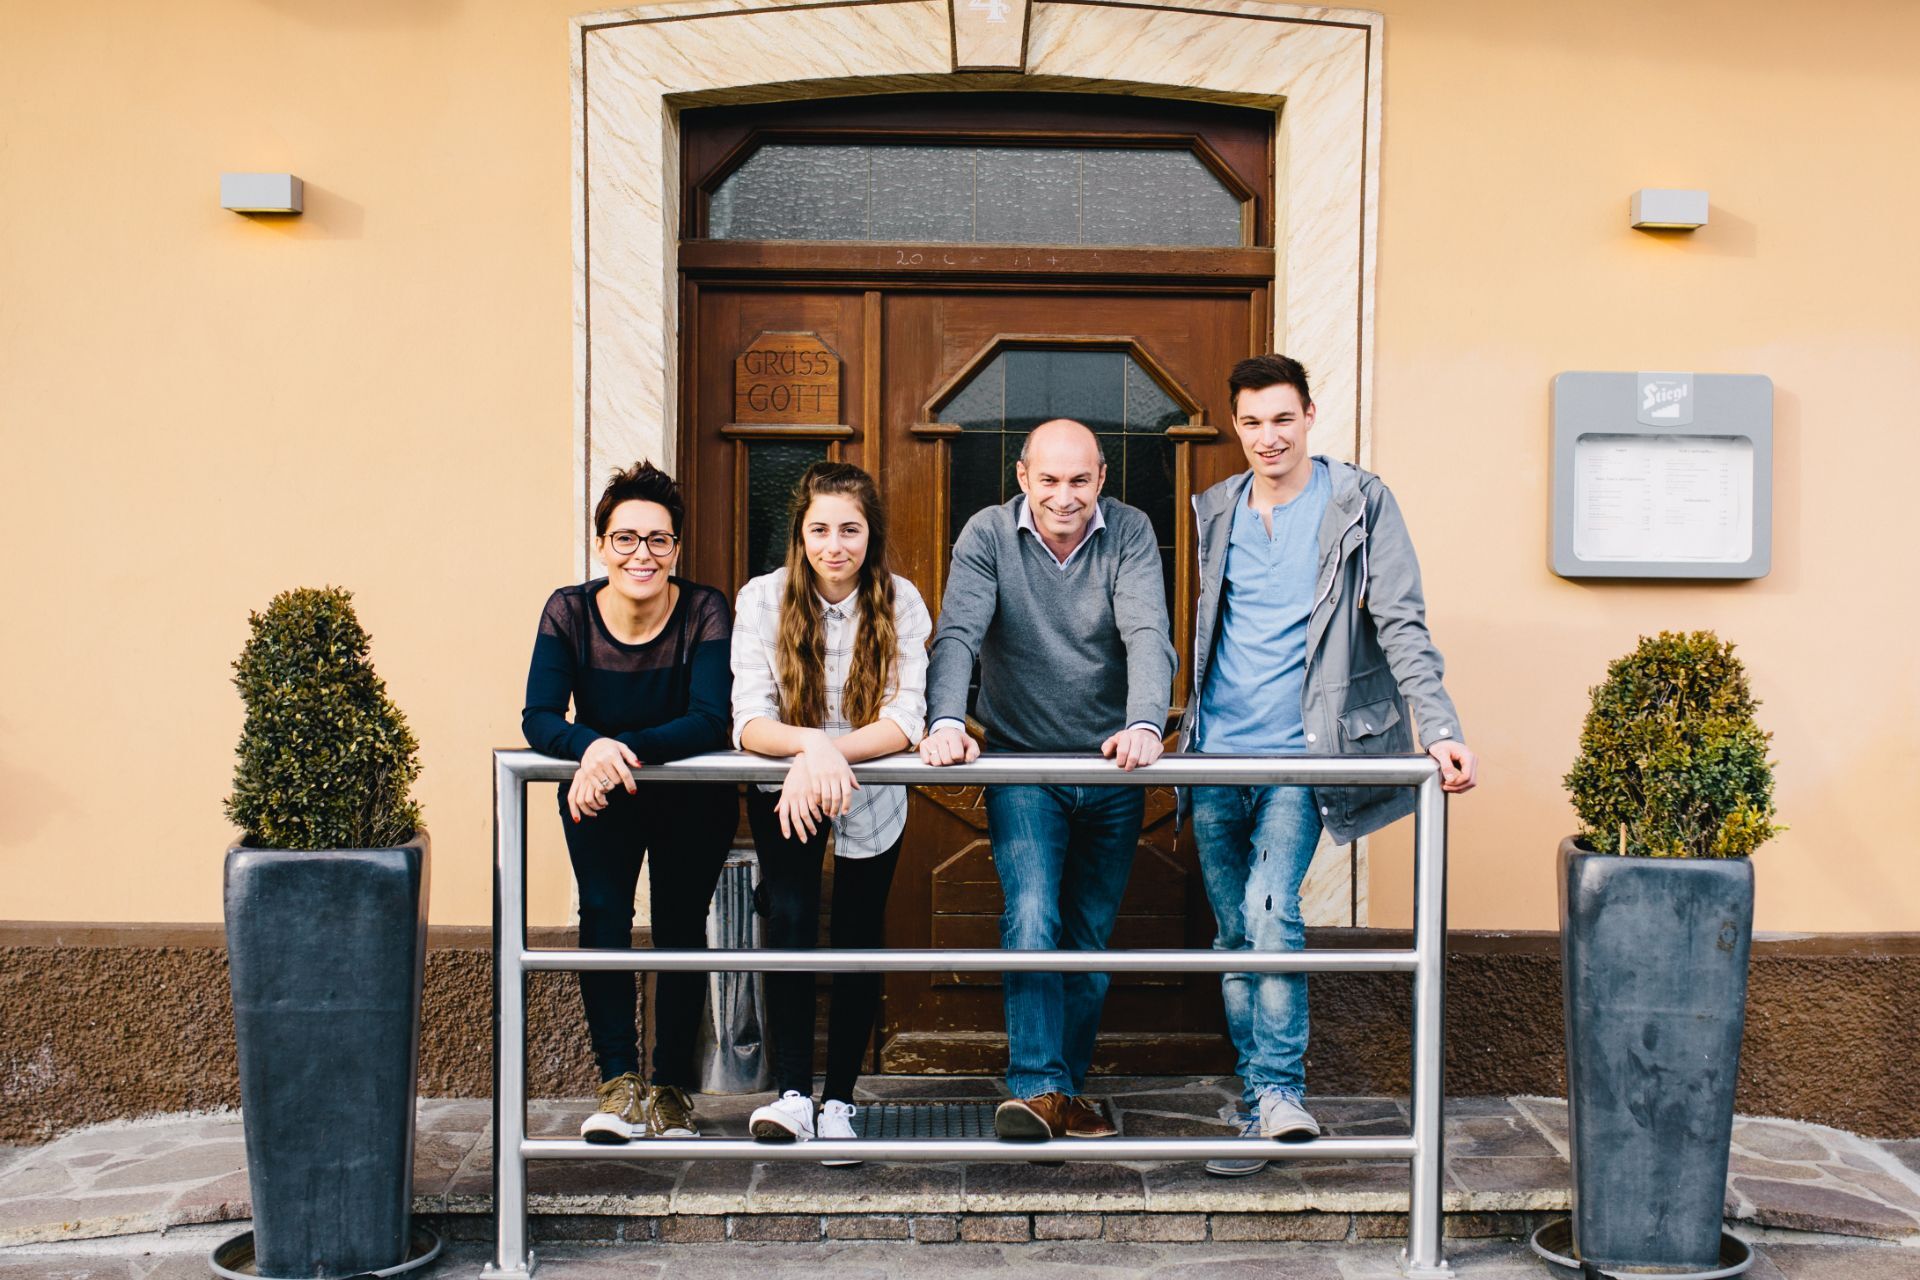 Gastgeber-Familie Rossmann vom Hotel Gasthof Strasswirt am Nassfeld in Kärnten